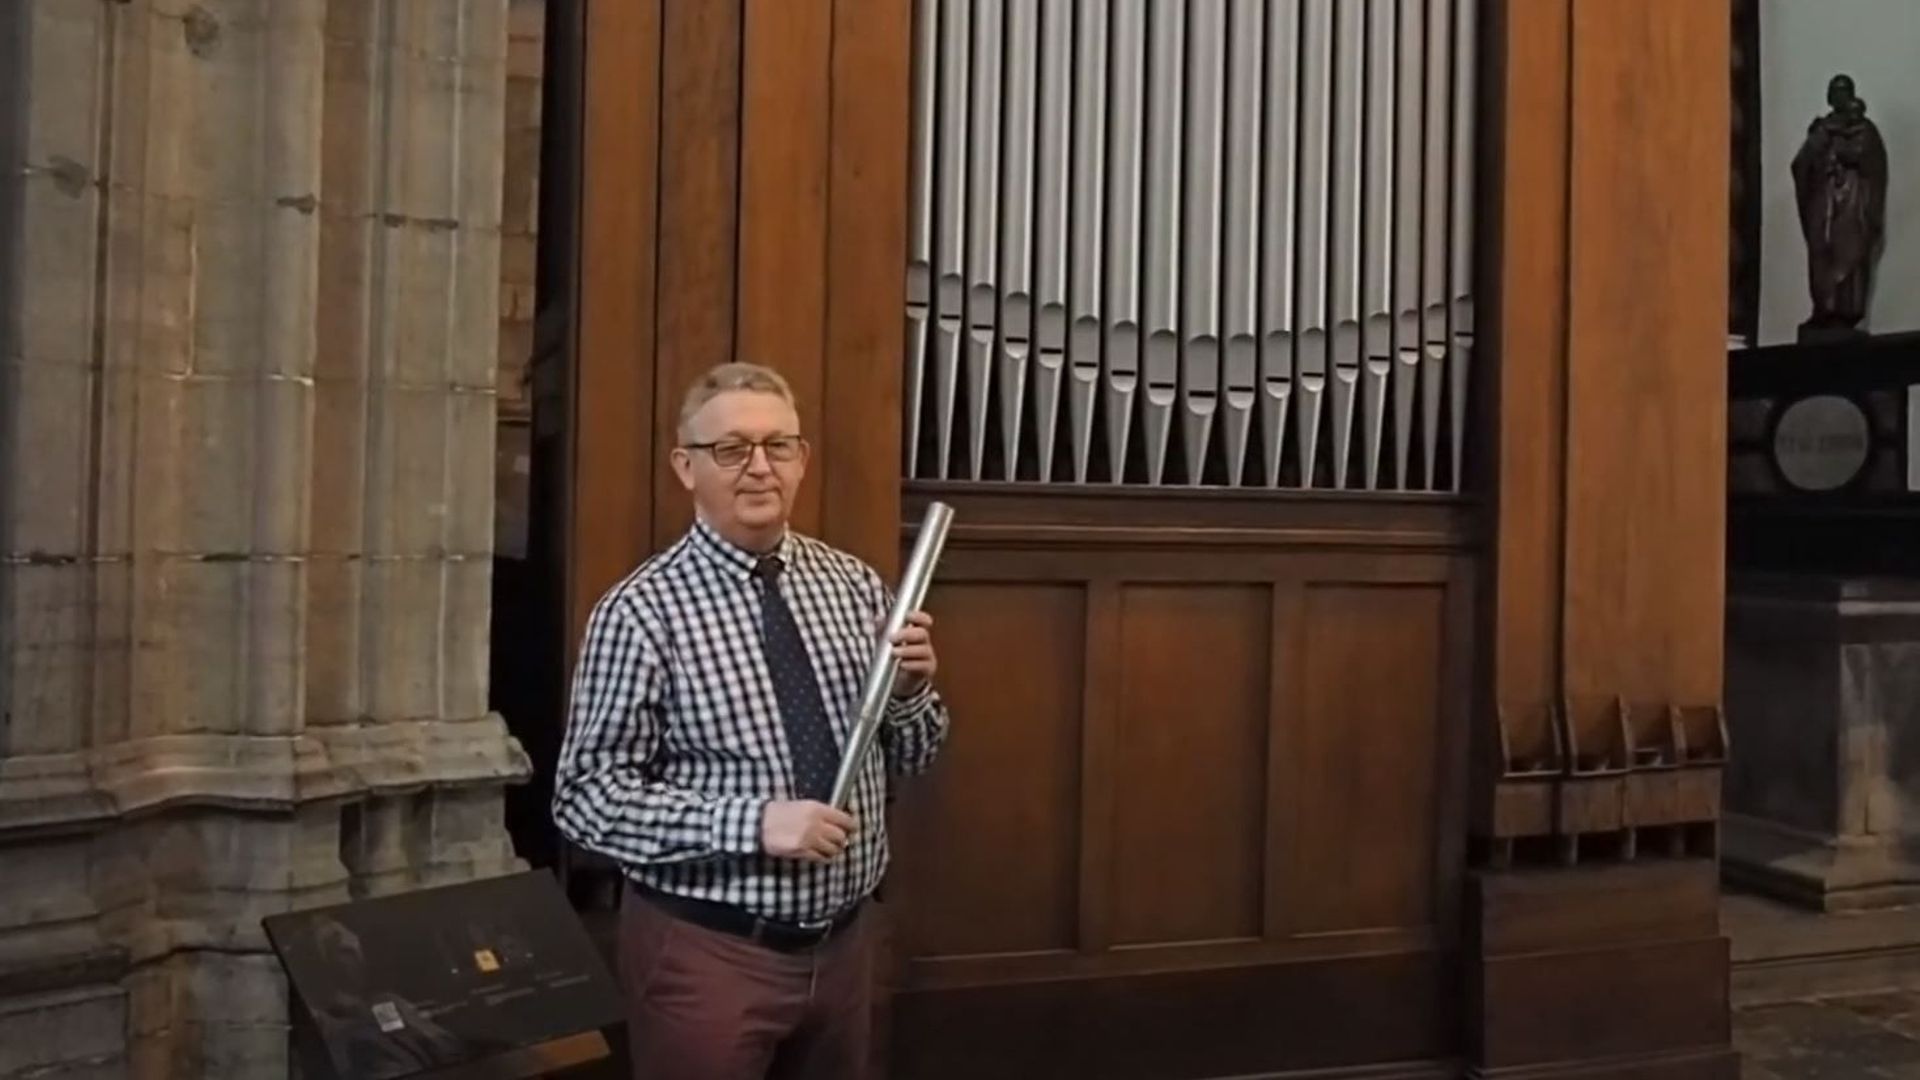 L'orgue - Les instruments de musique